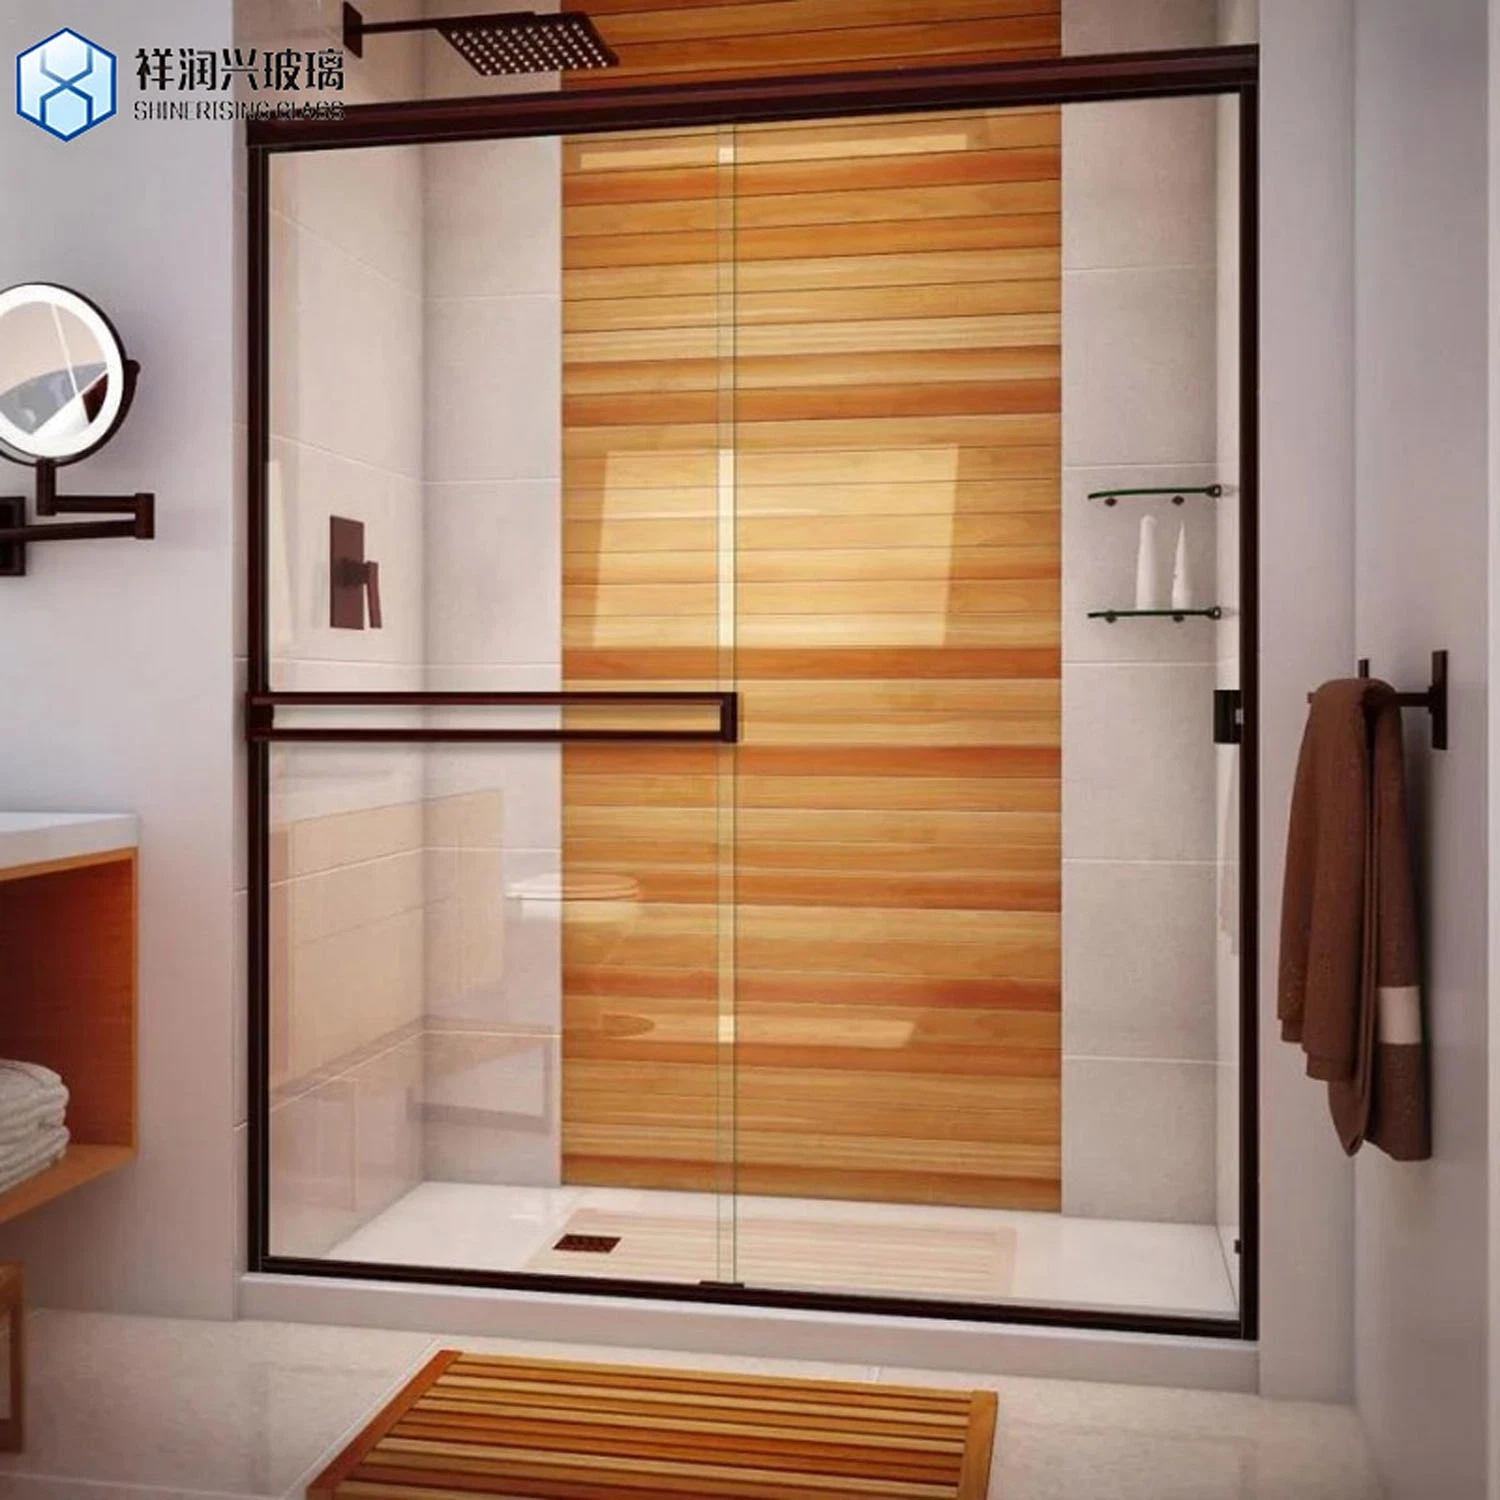 Hotel Bathroom Low Iron Tempered Glass Frameless Sliding Shower Door Glass Bathroom Door